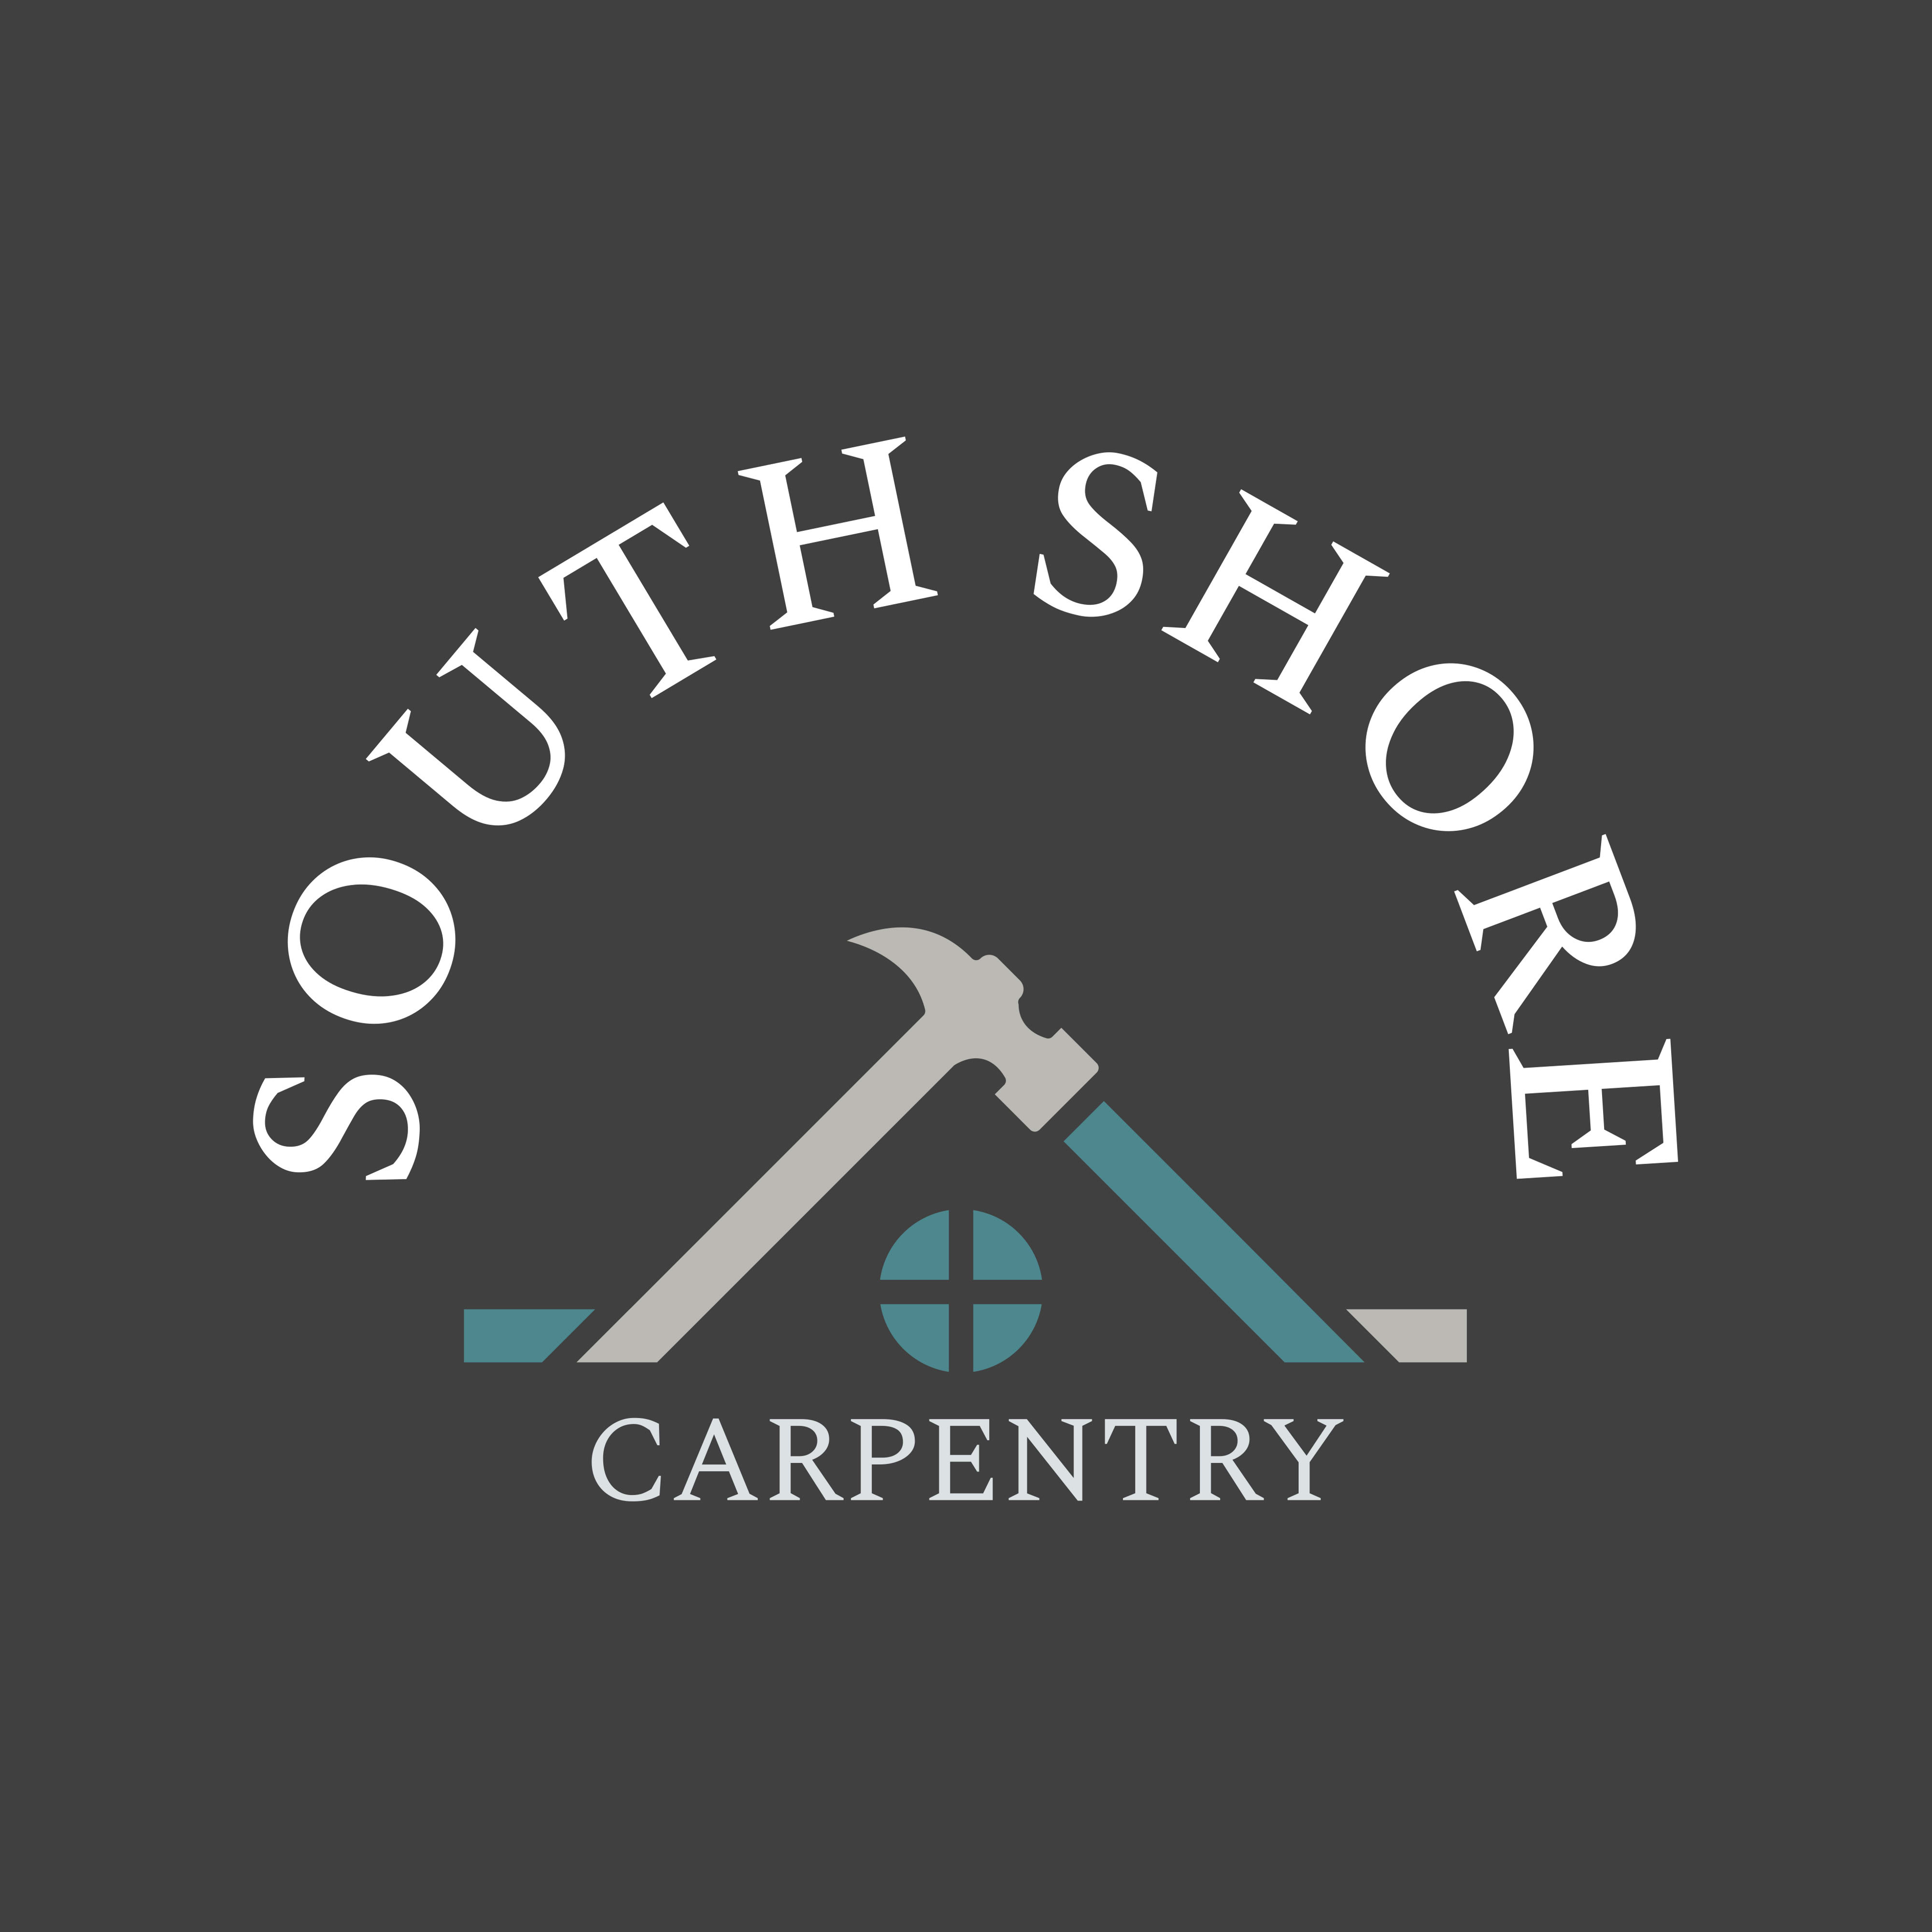 South Shore Carpentry